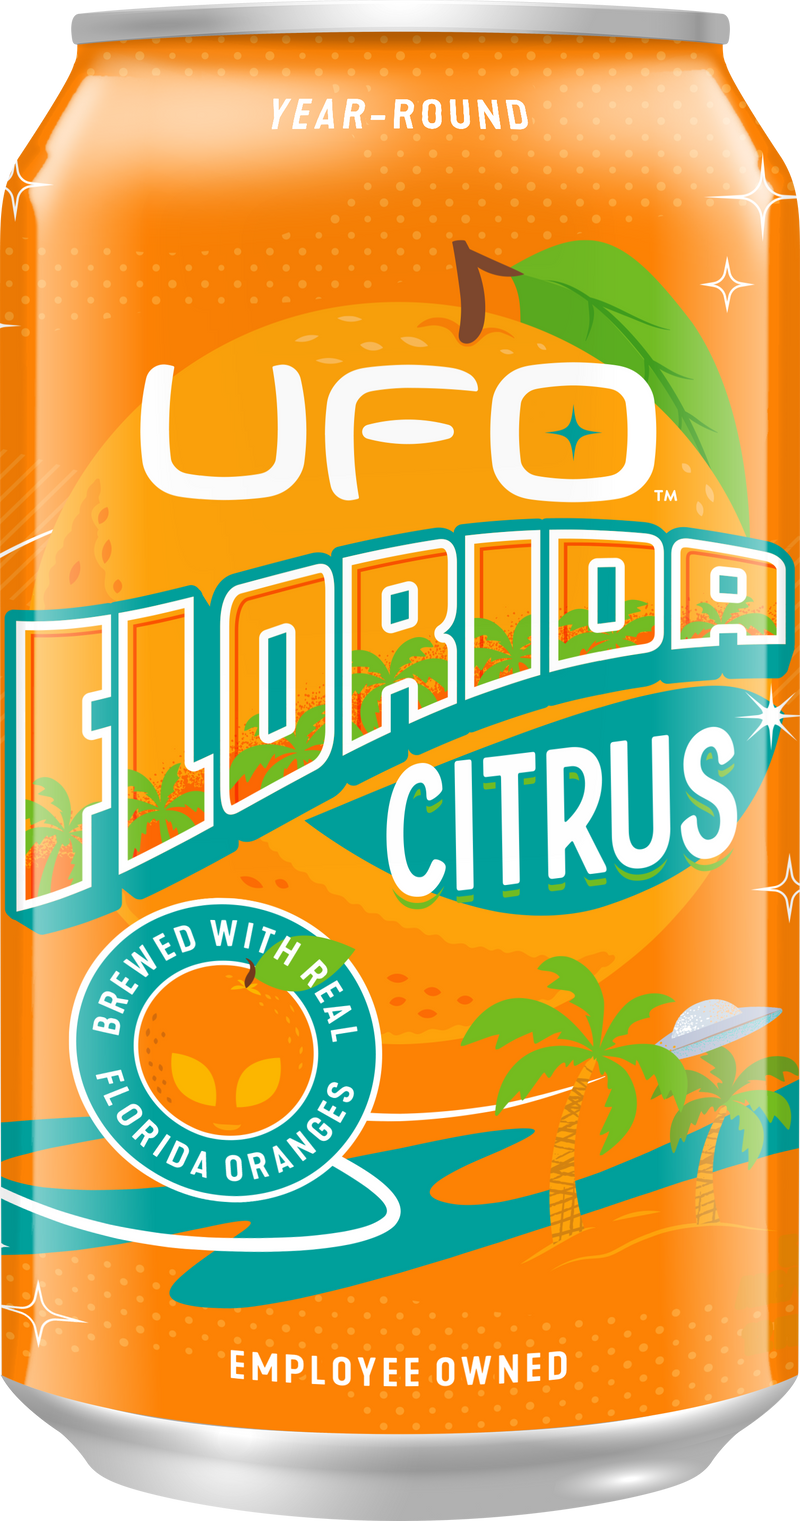 UFO Florida Citrus